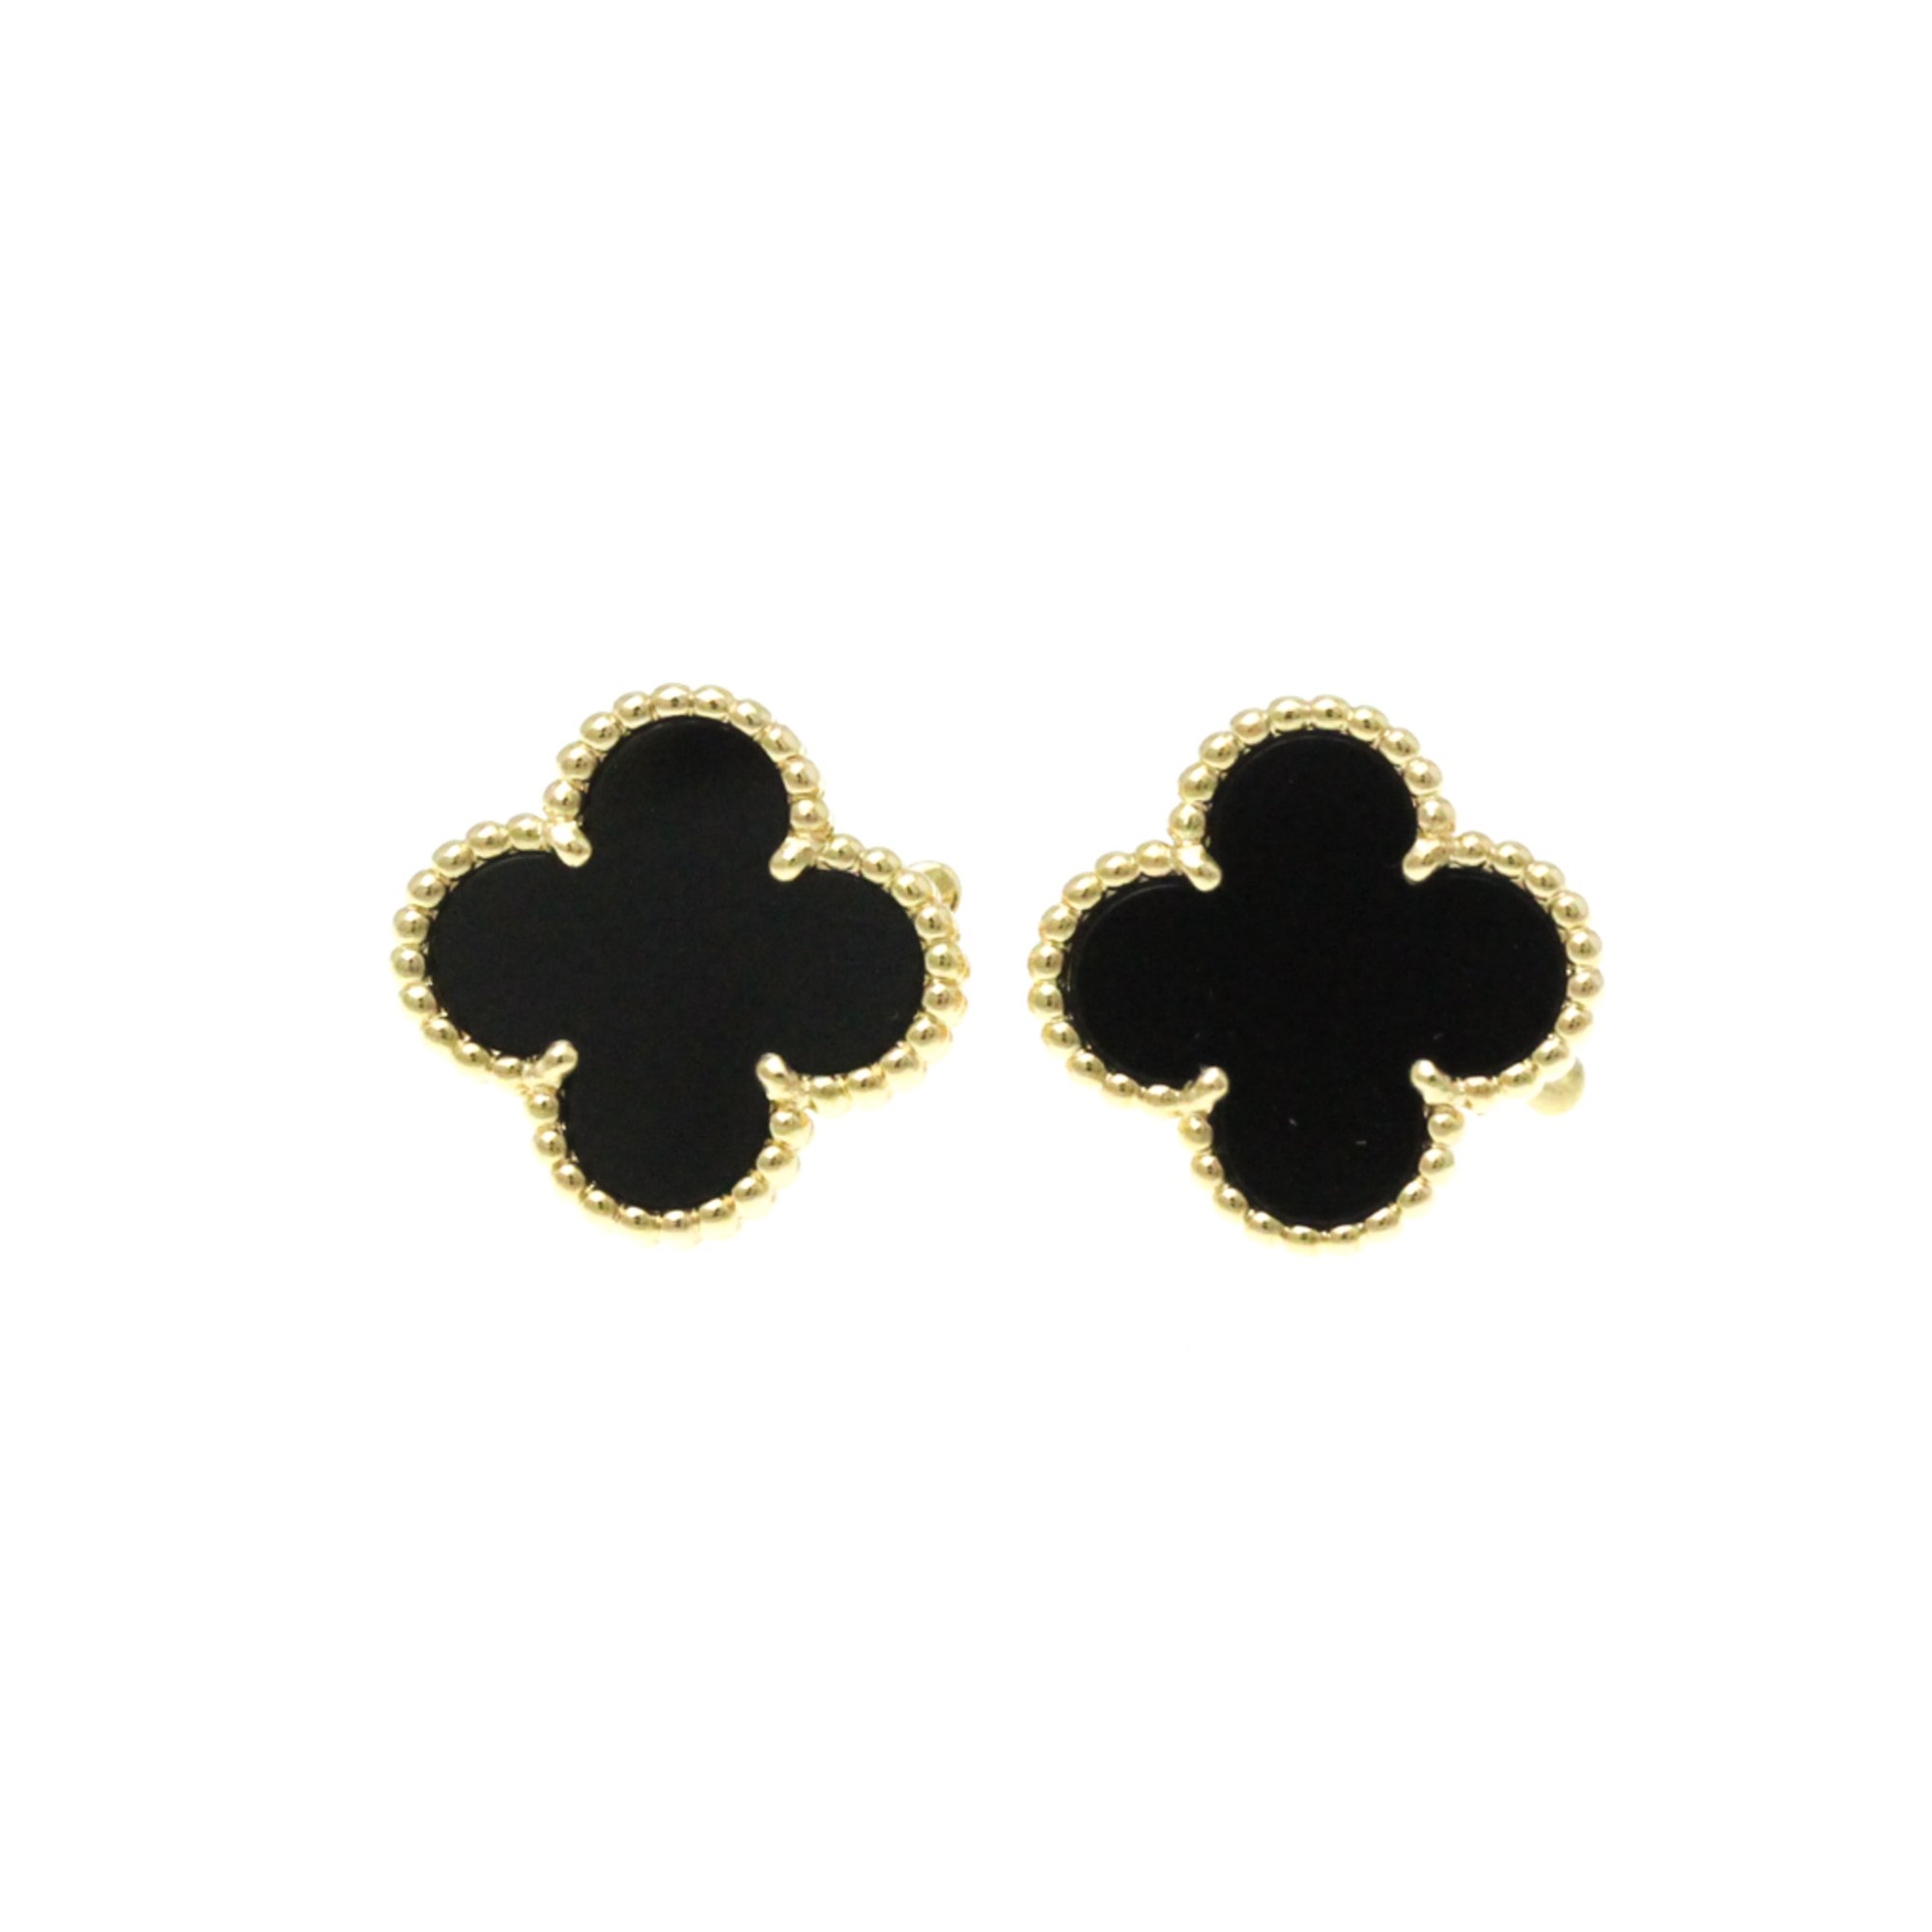 Van Cleef & Arpels Vintage Alhambra VCARA44200 Onyx Yellow Gold (18K) Stud Earrings Gold